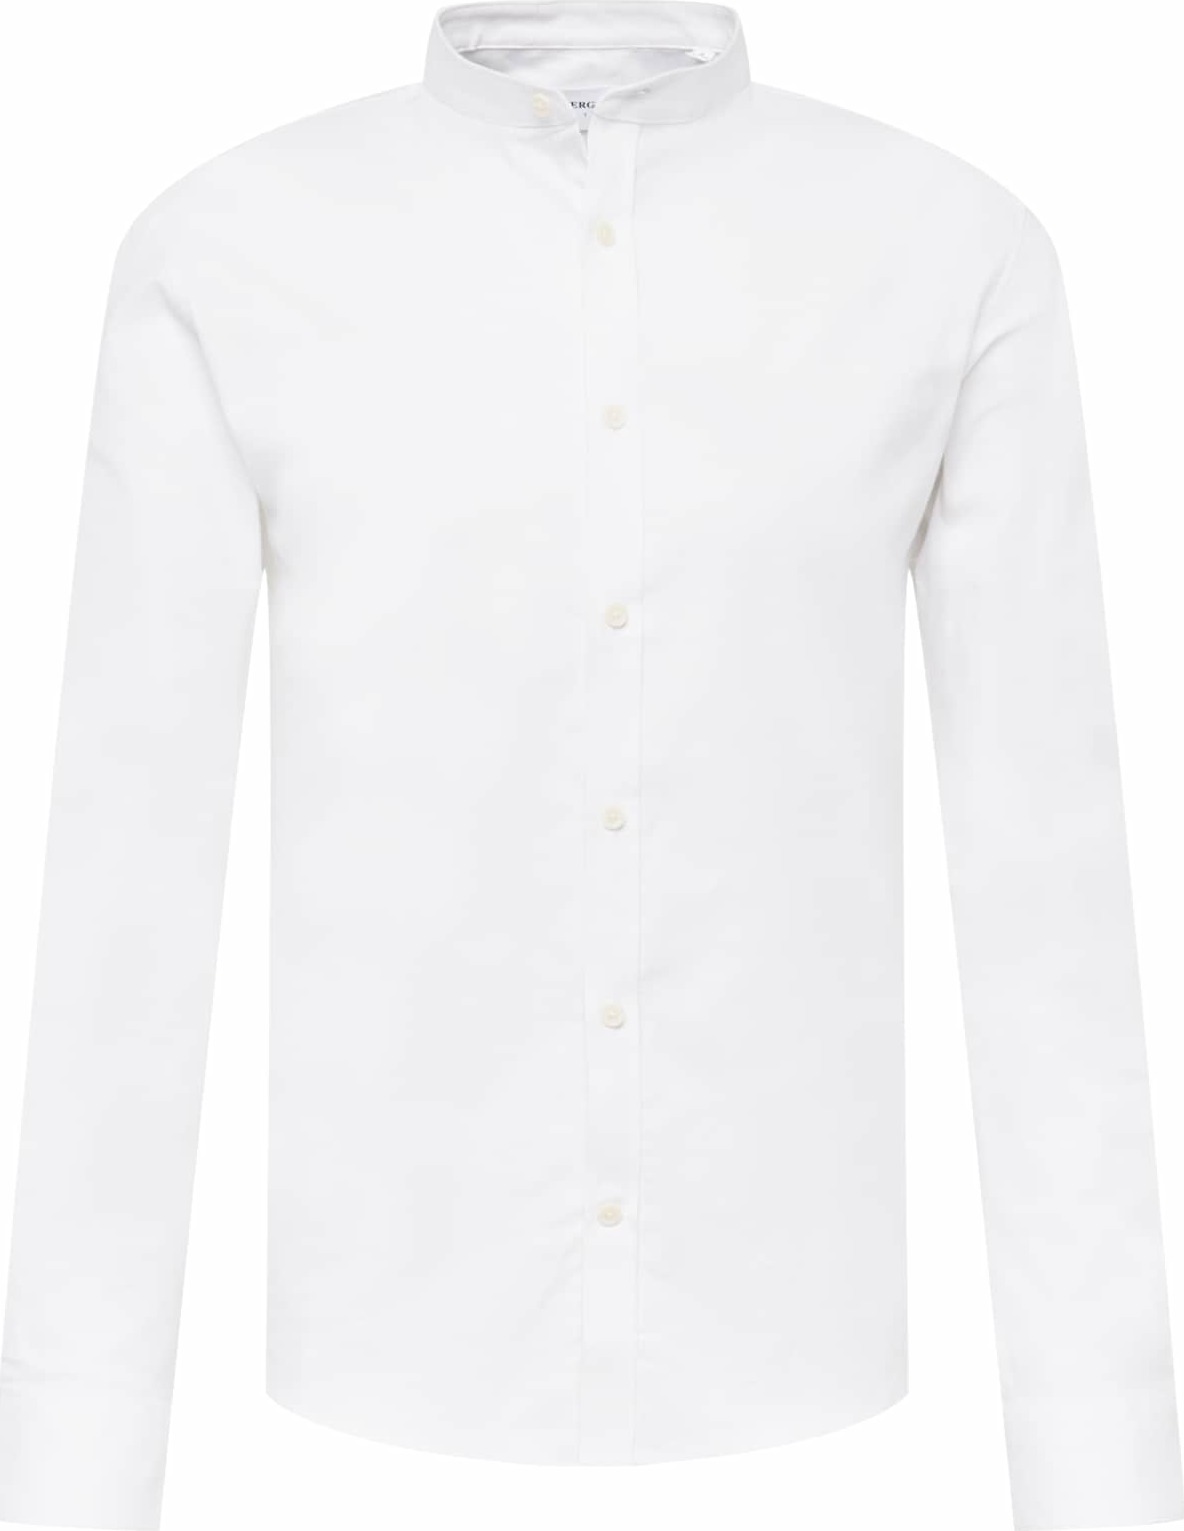 Košile lindbergh bílá